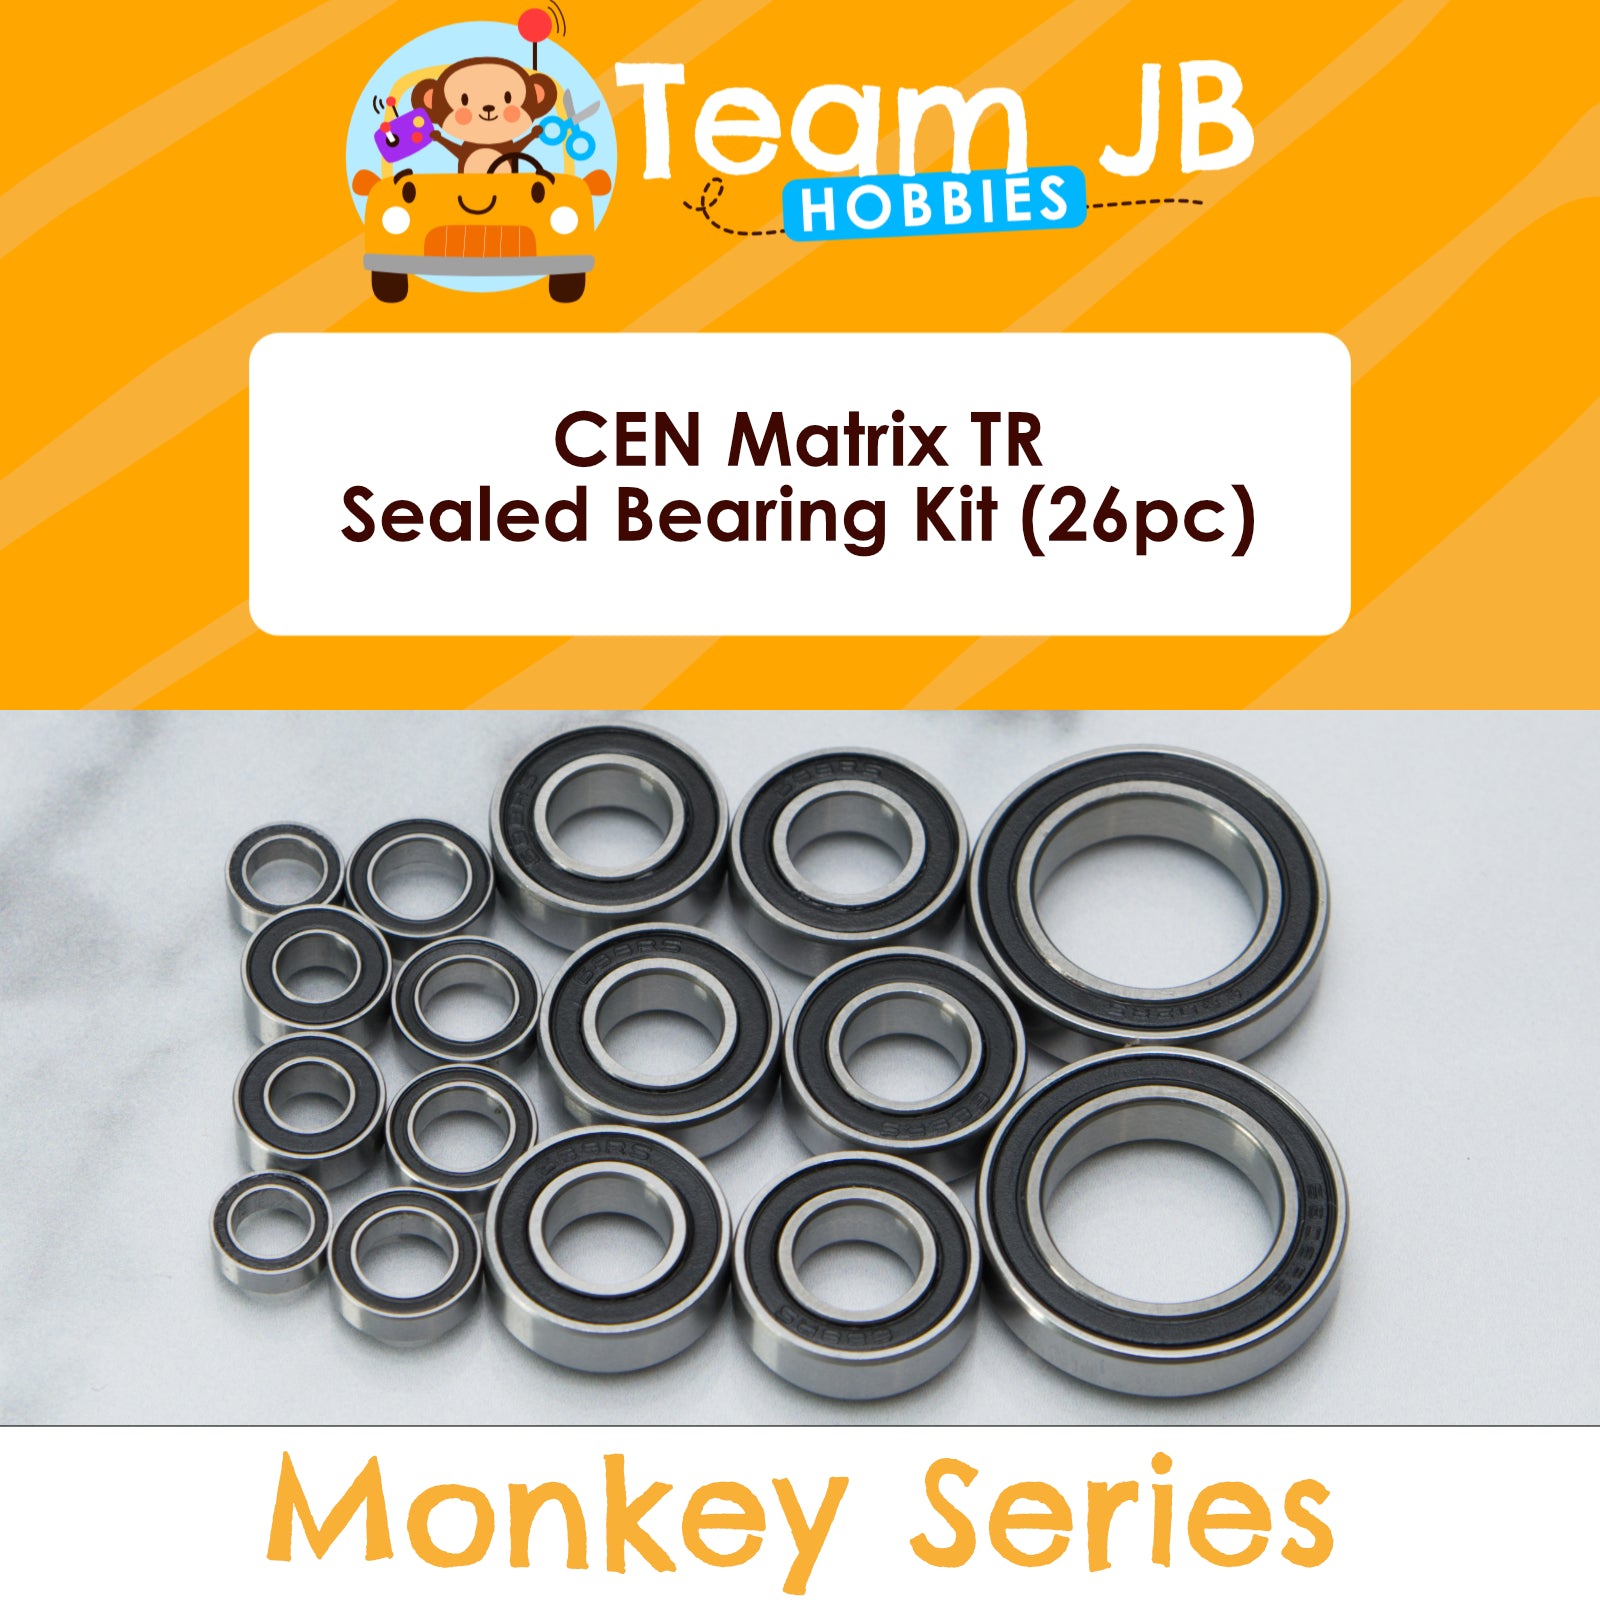 CEN Matrix TR - Sealed Bearing Kit